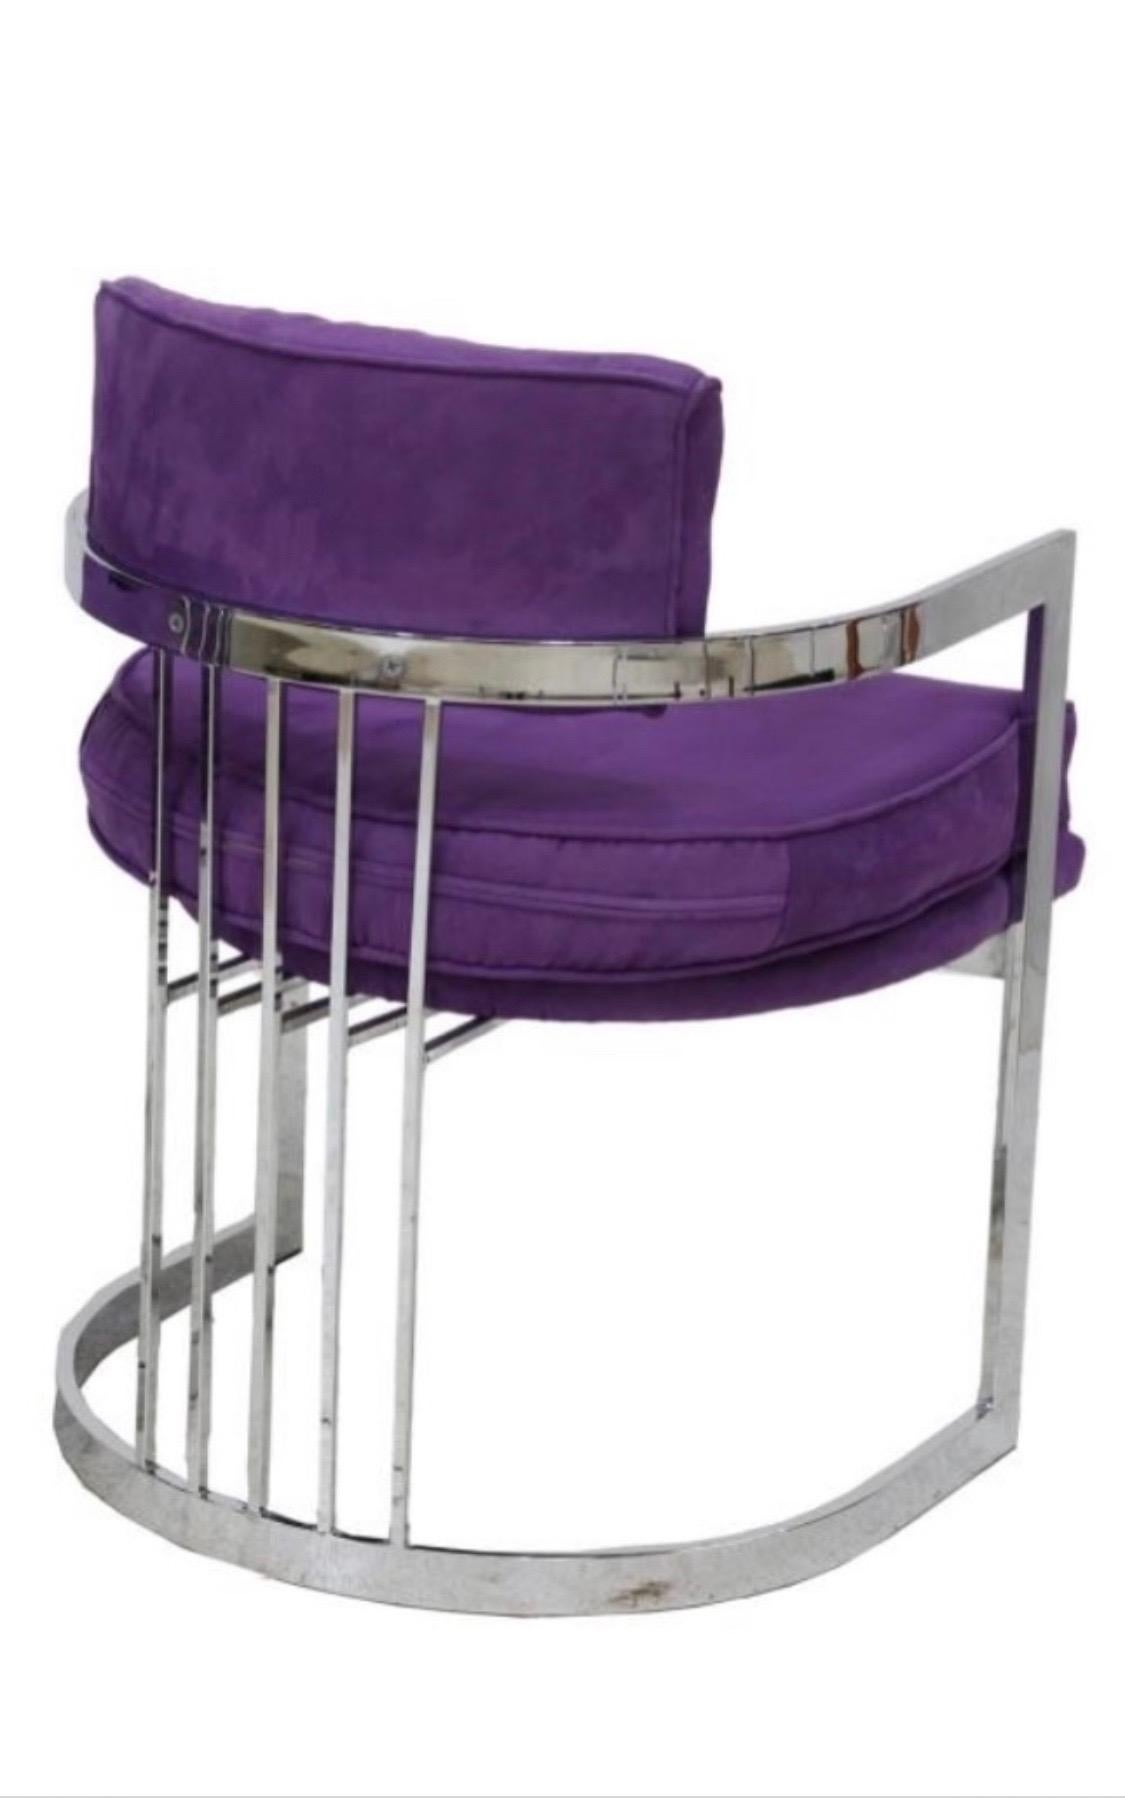 2 ensembles de chaises modernes à dossier en tonneau de Milo Baughman pour Thayer. 
Structure en acier chromé avec un revêtement en ultra daim violet.